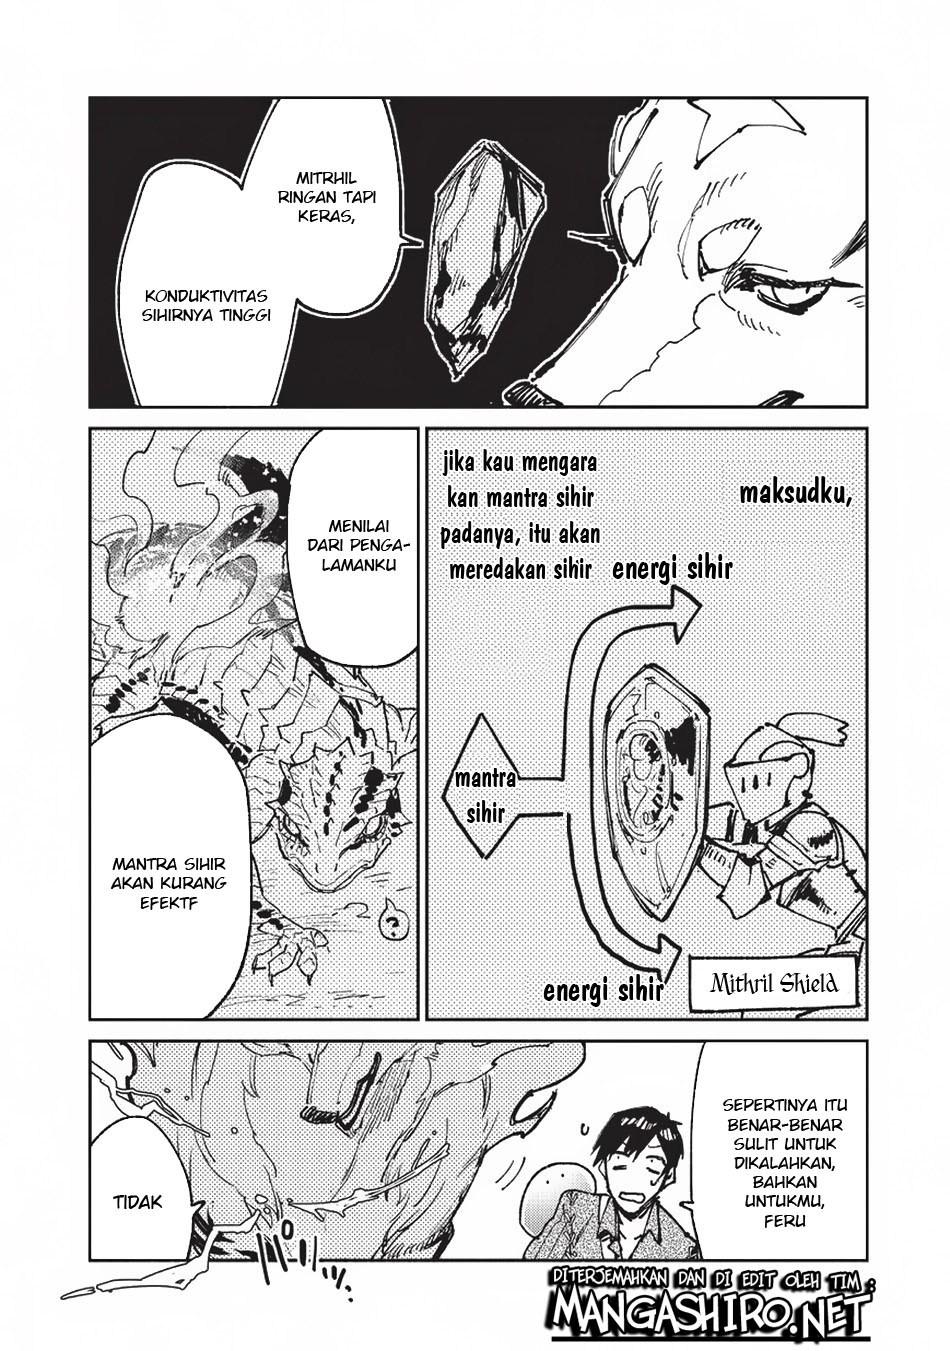 Tondemo Skill de Isekai Hourou Meshi Chapter 22